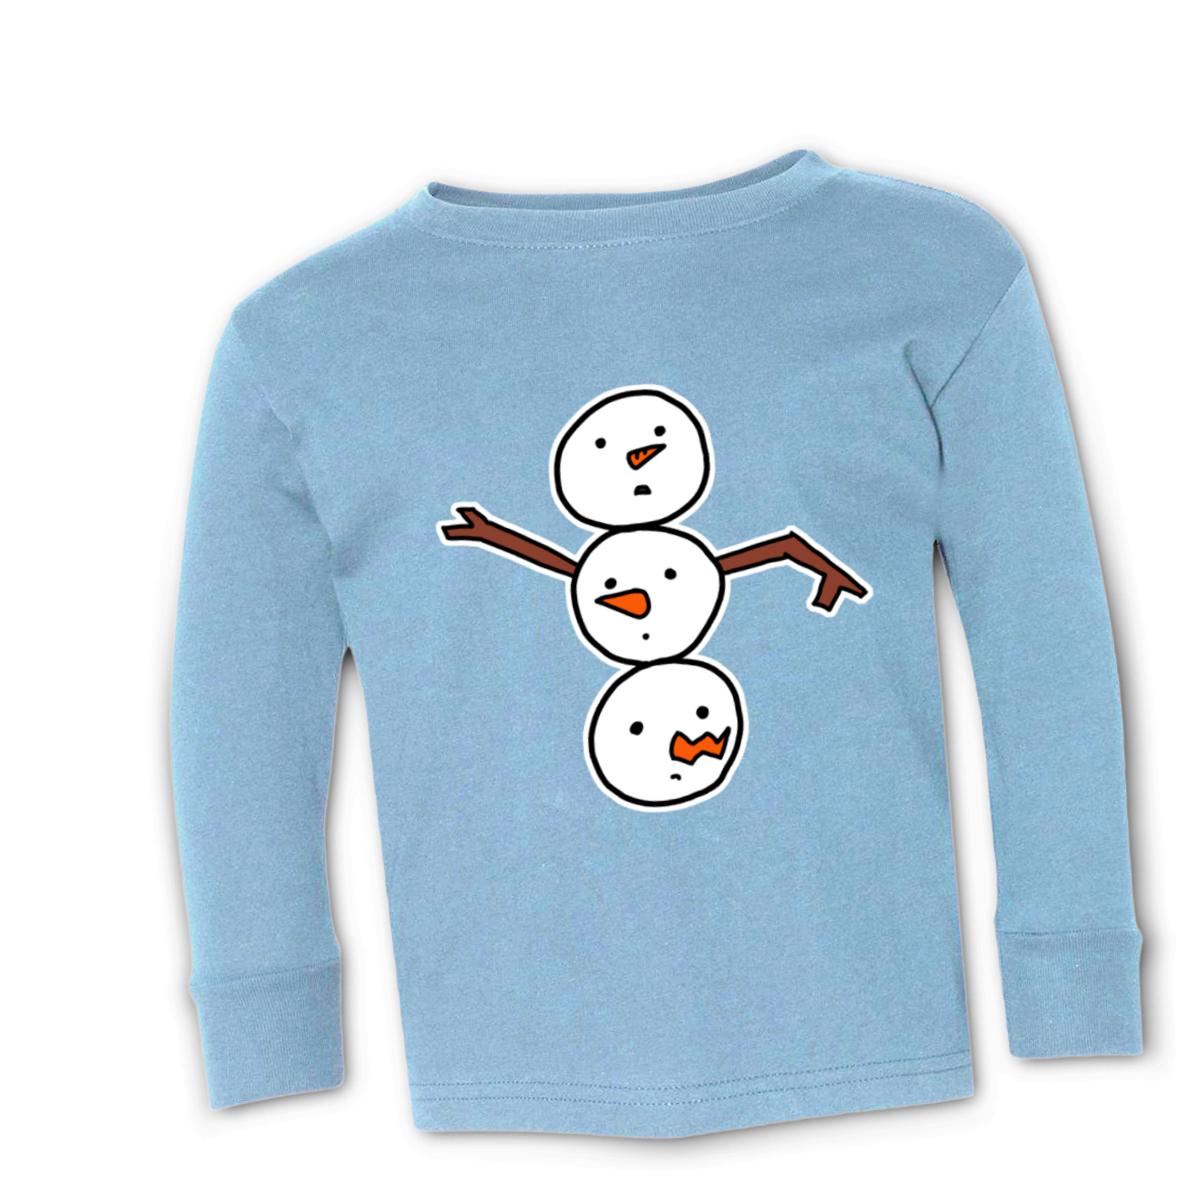 Snowman All Heads Toddler Long Sleeve Tee 2T light-blue